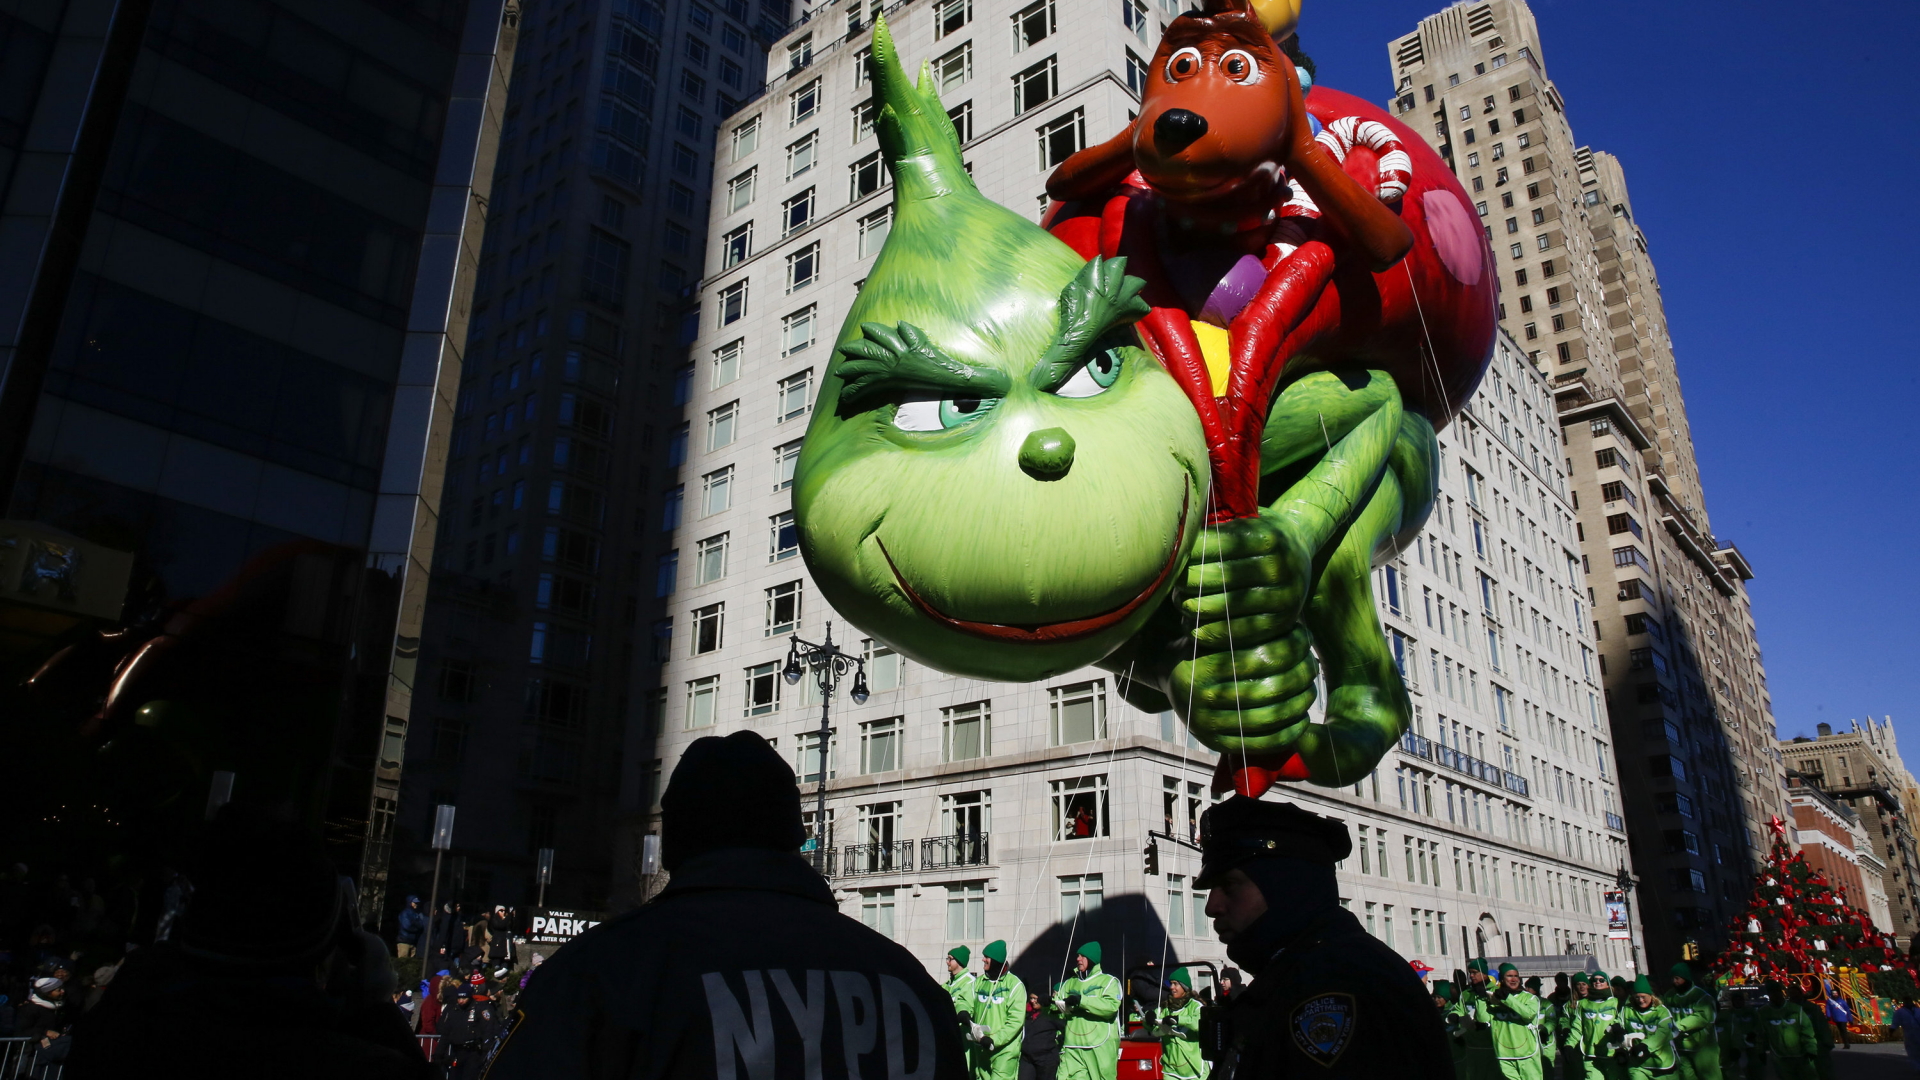 Der Grinch schwebt als Luftballon auf einer Parade in new York | Bildquelle: dpa